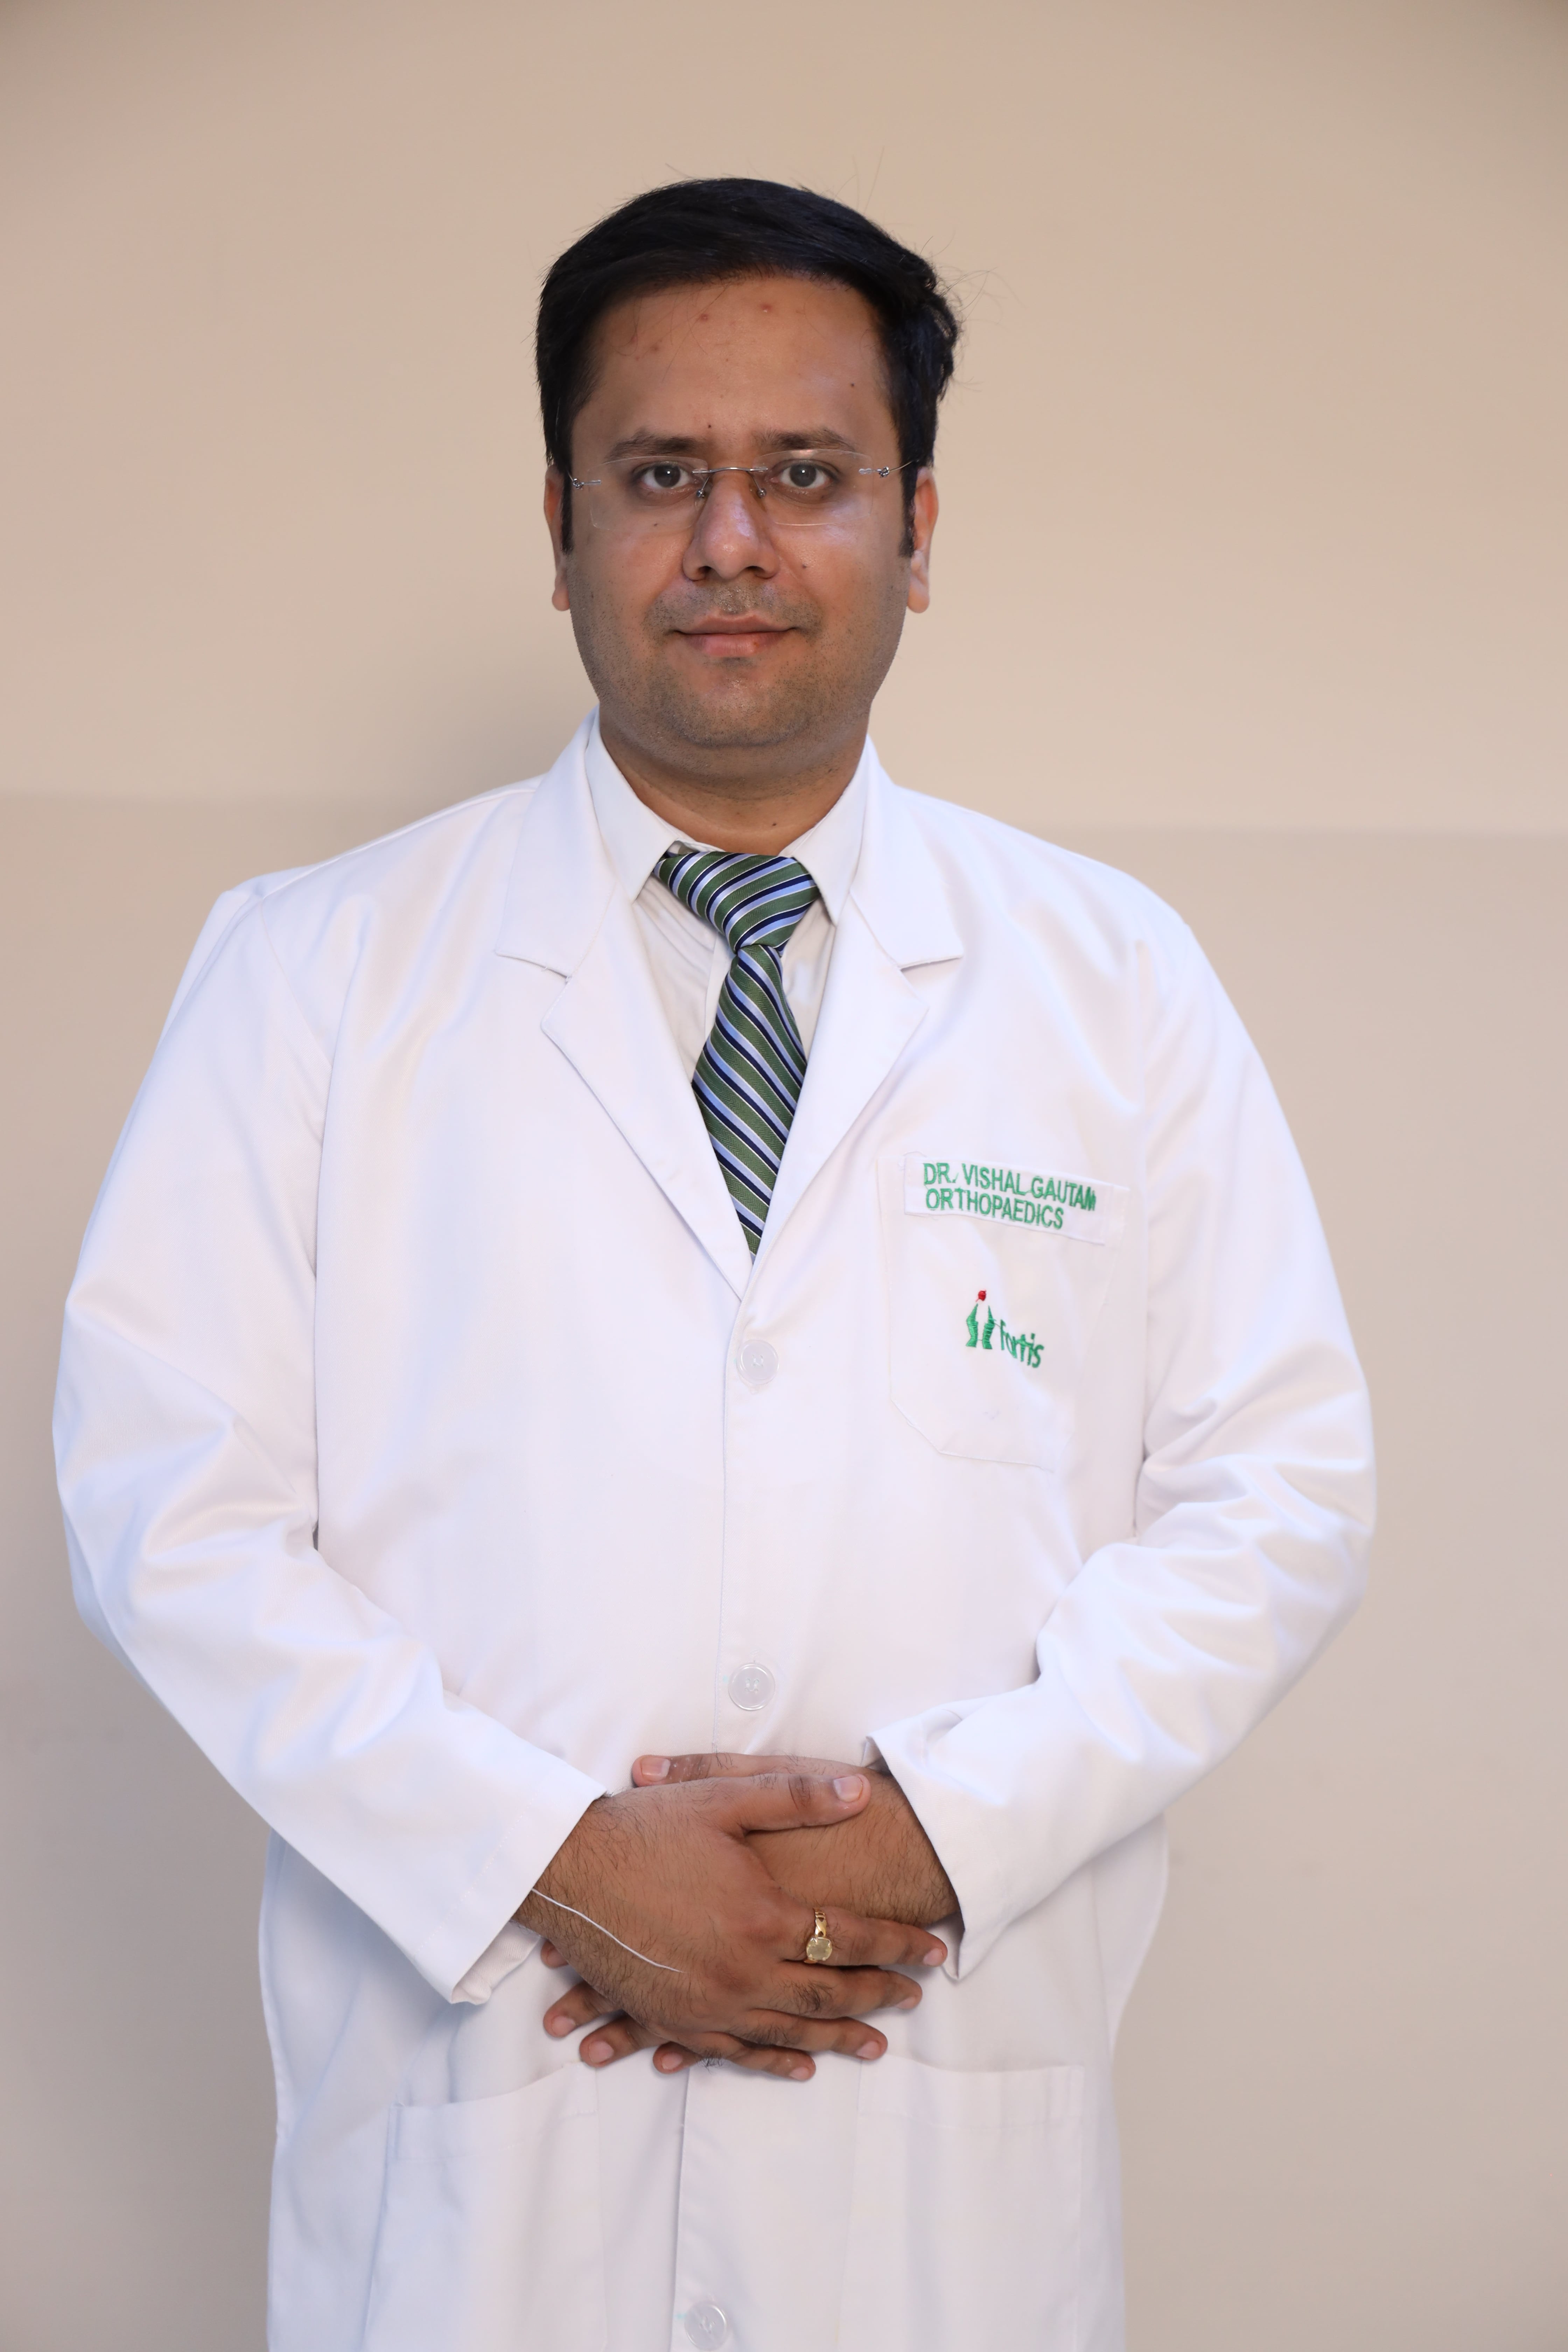 Vishal Gautam博士